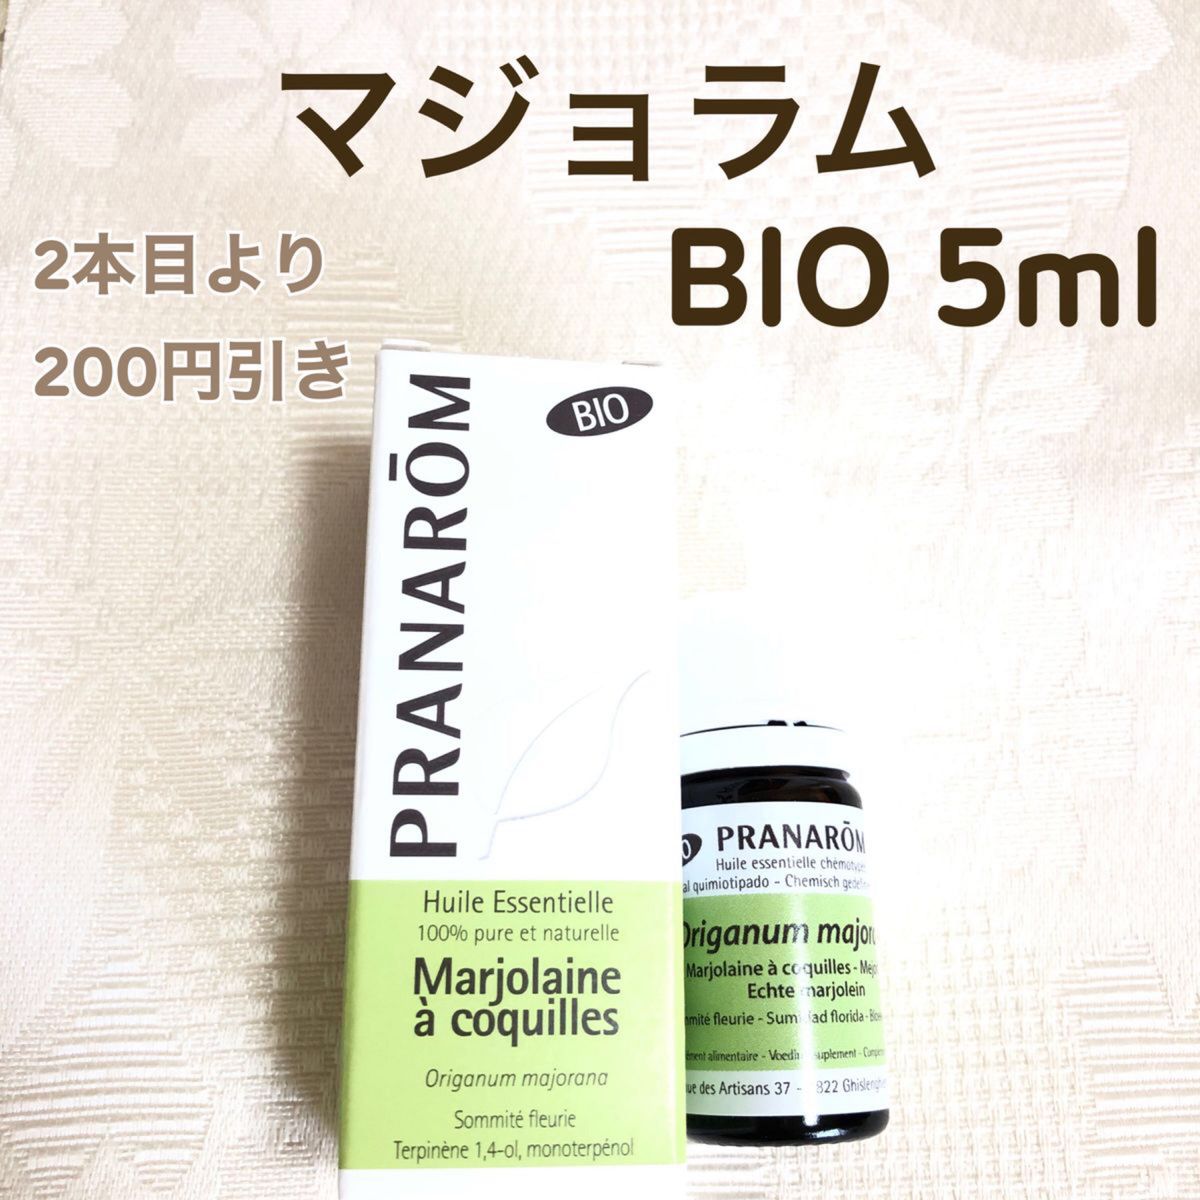 【マジョラム BIO】5ml プラナロム 精油